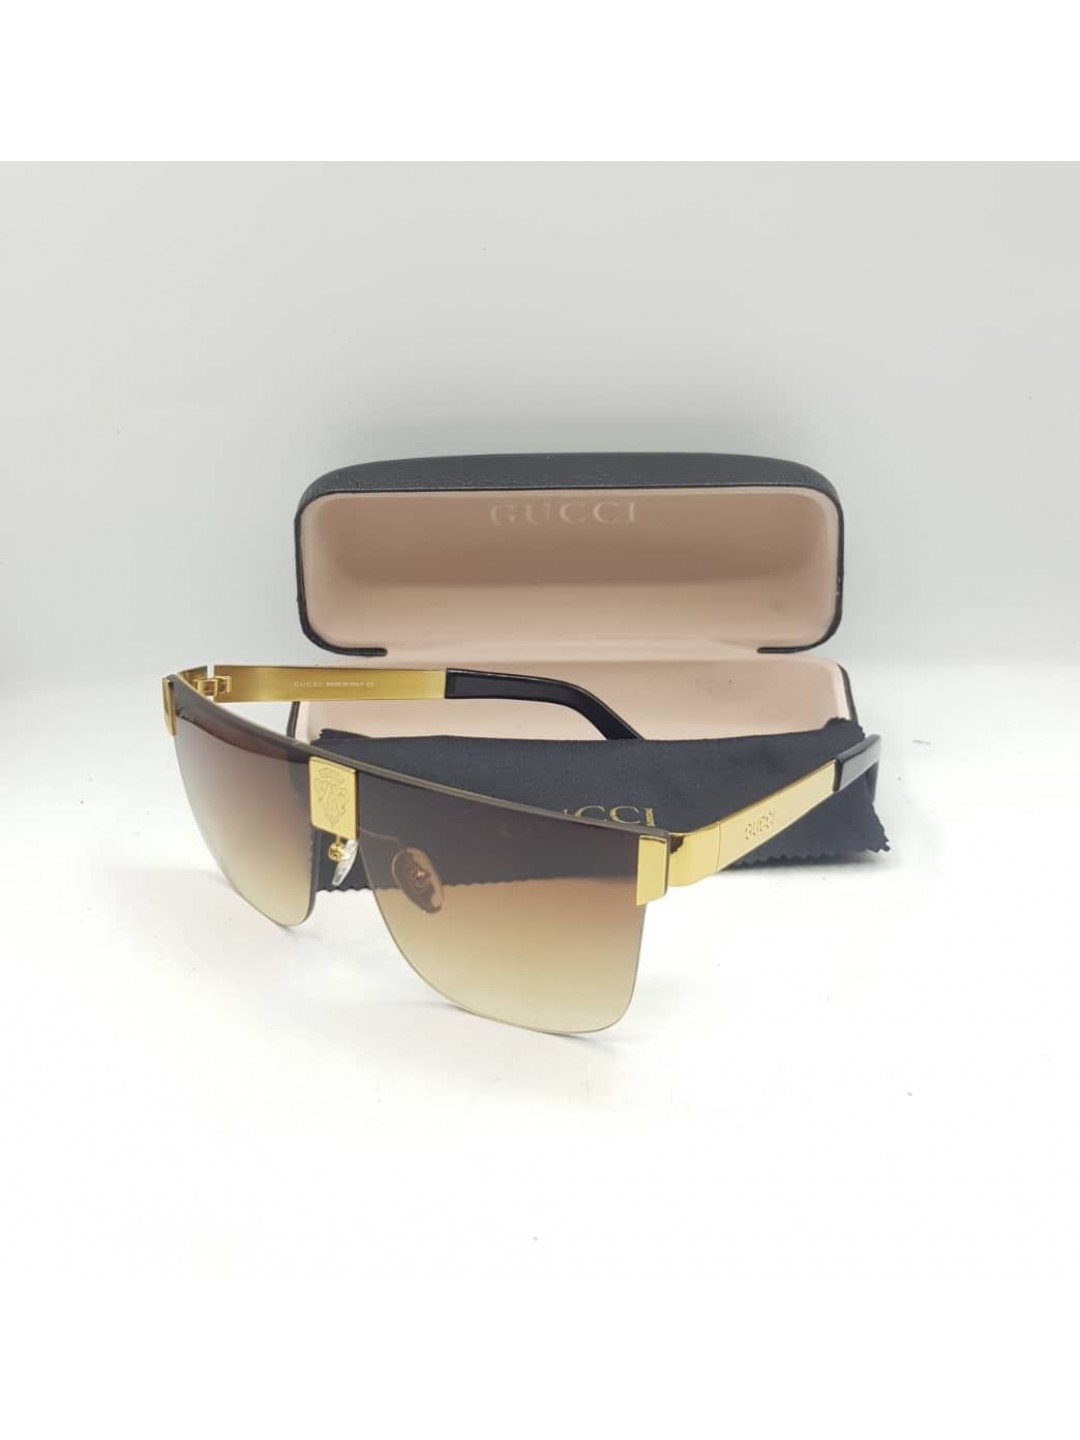 wholesale gucci sunglasses